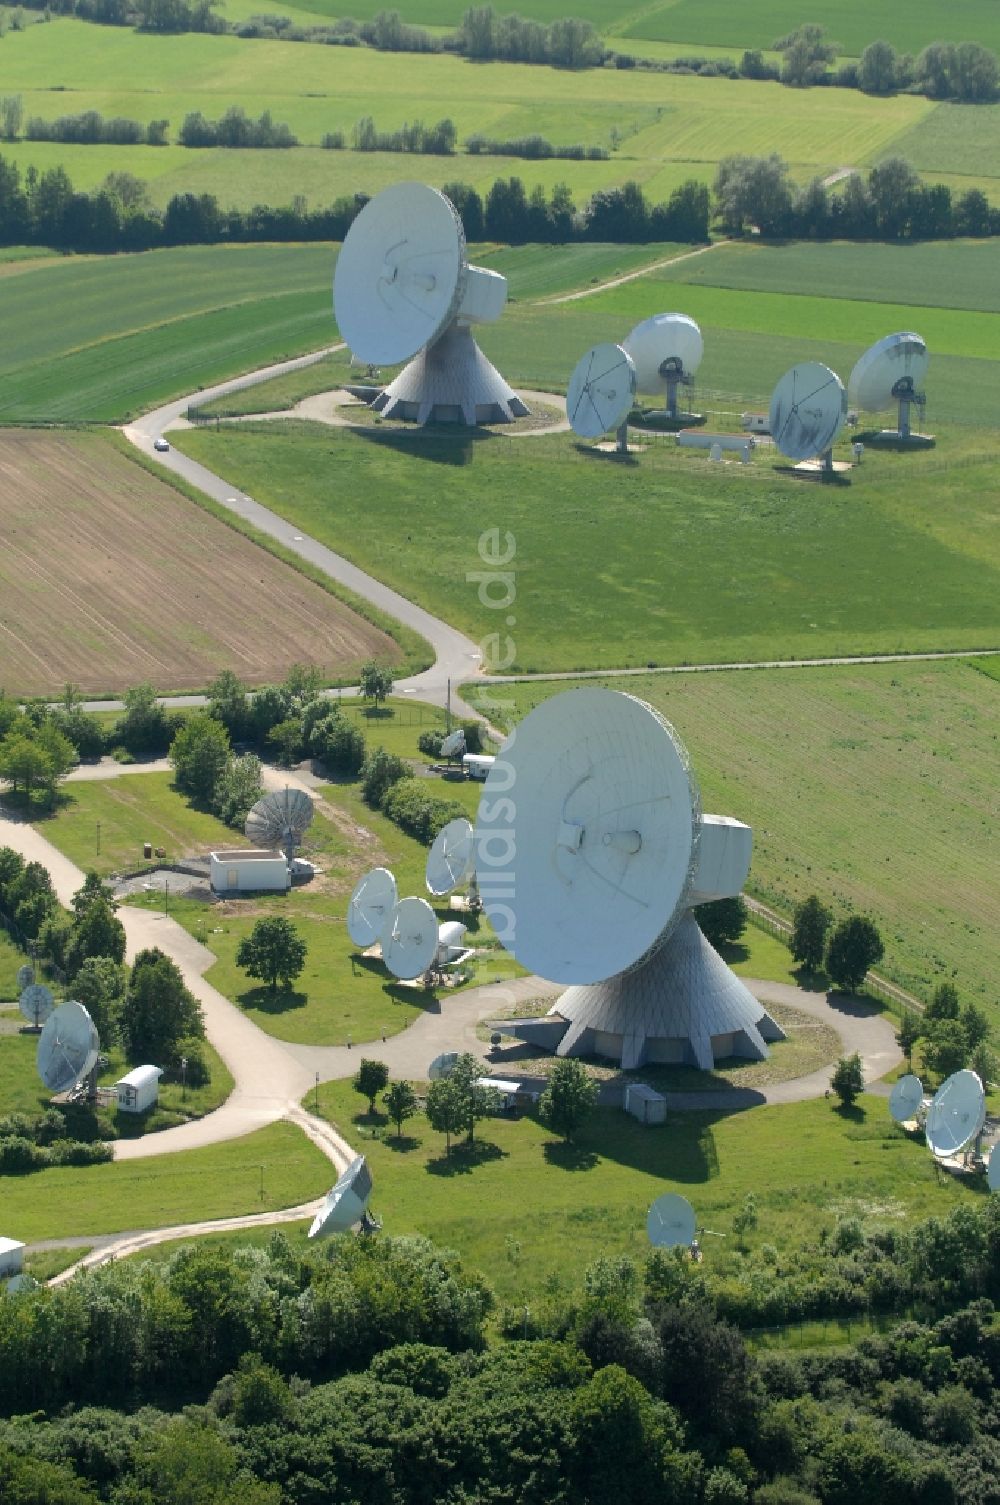 Luftbild Fuchsstadt - Parbolantenne - Satellitenschüsseln in Fuchsstadt im Bundesland Bayern, Deutschland